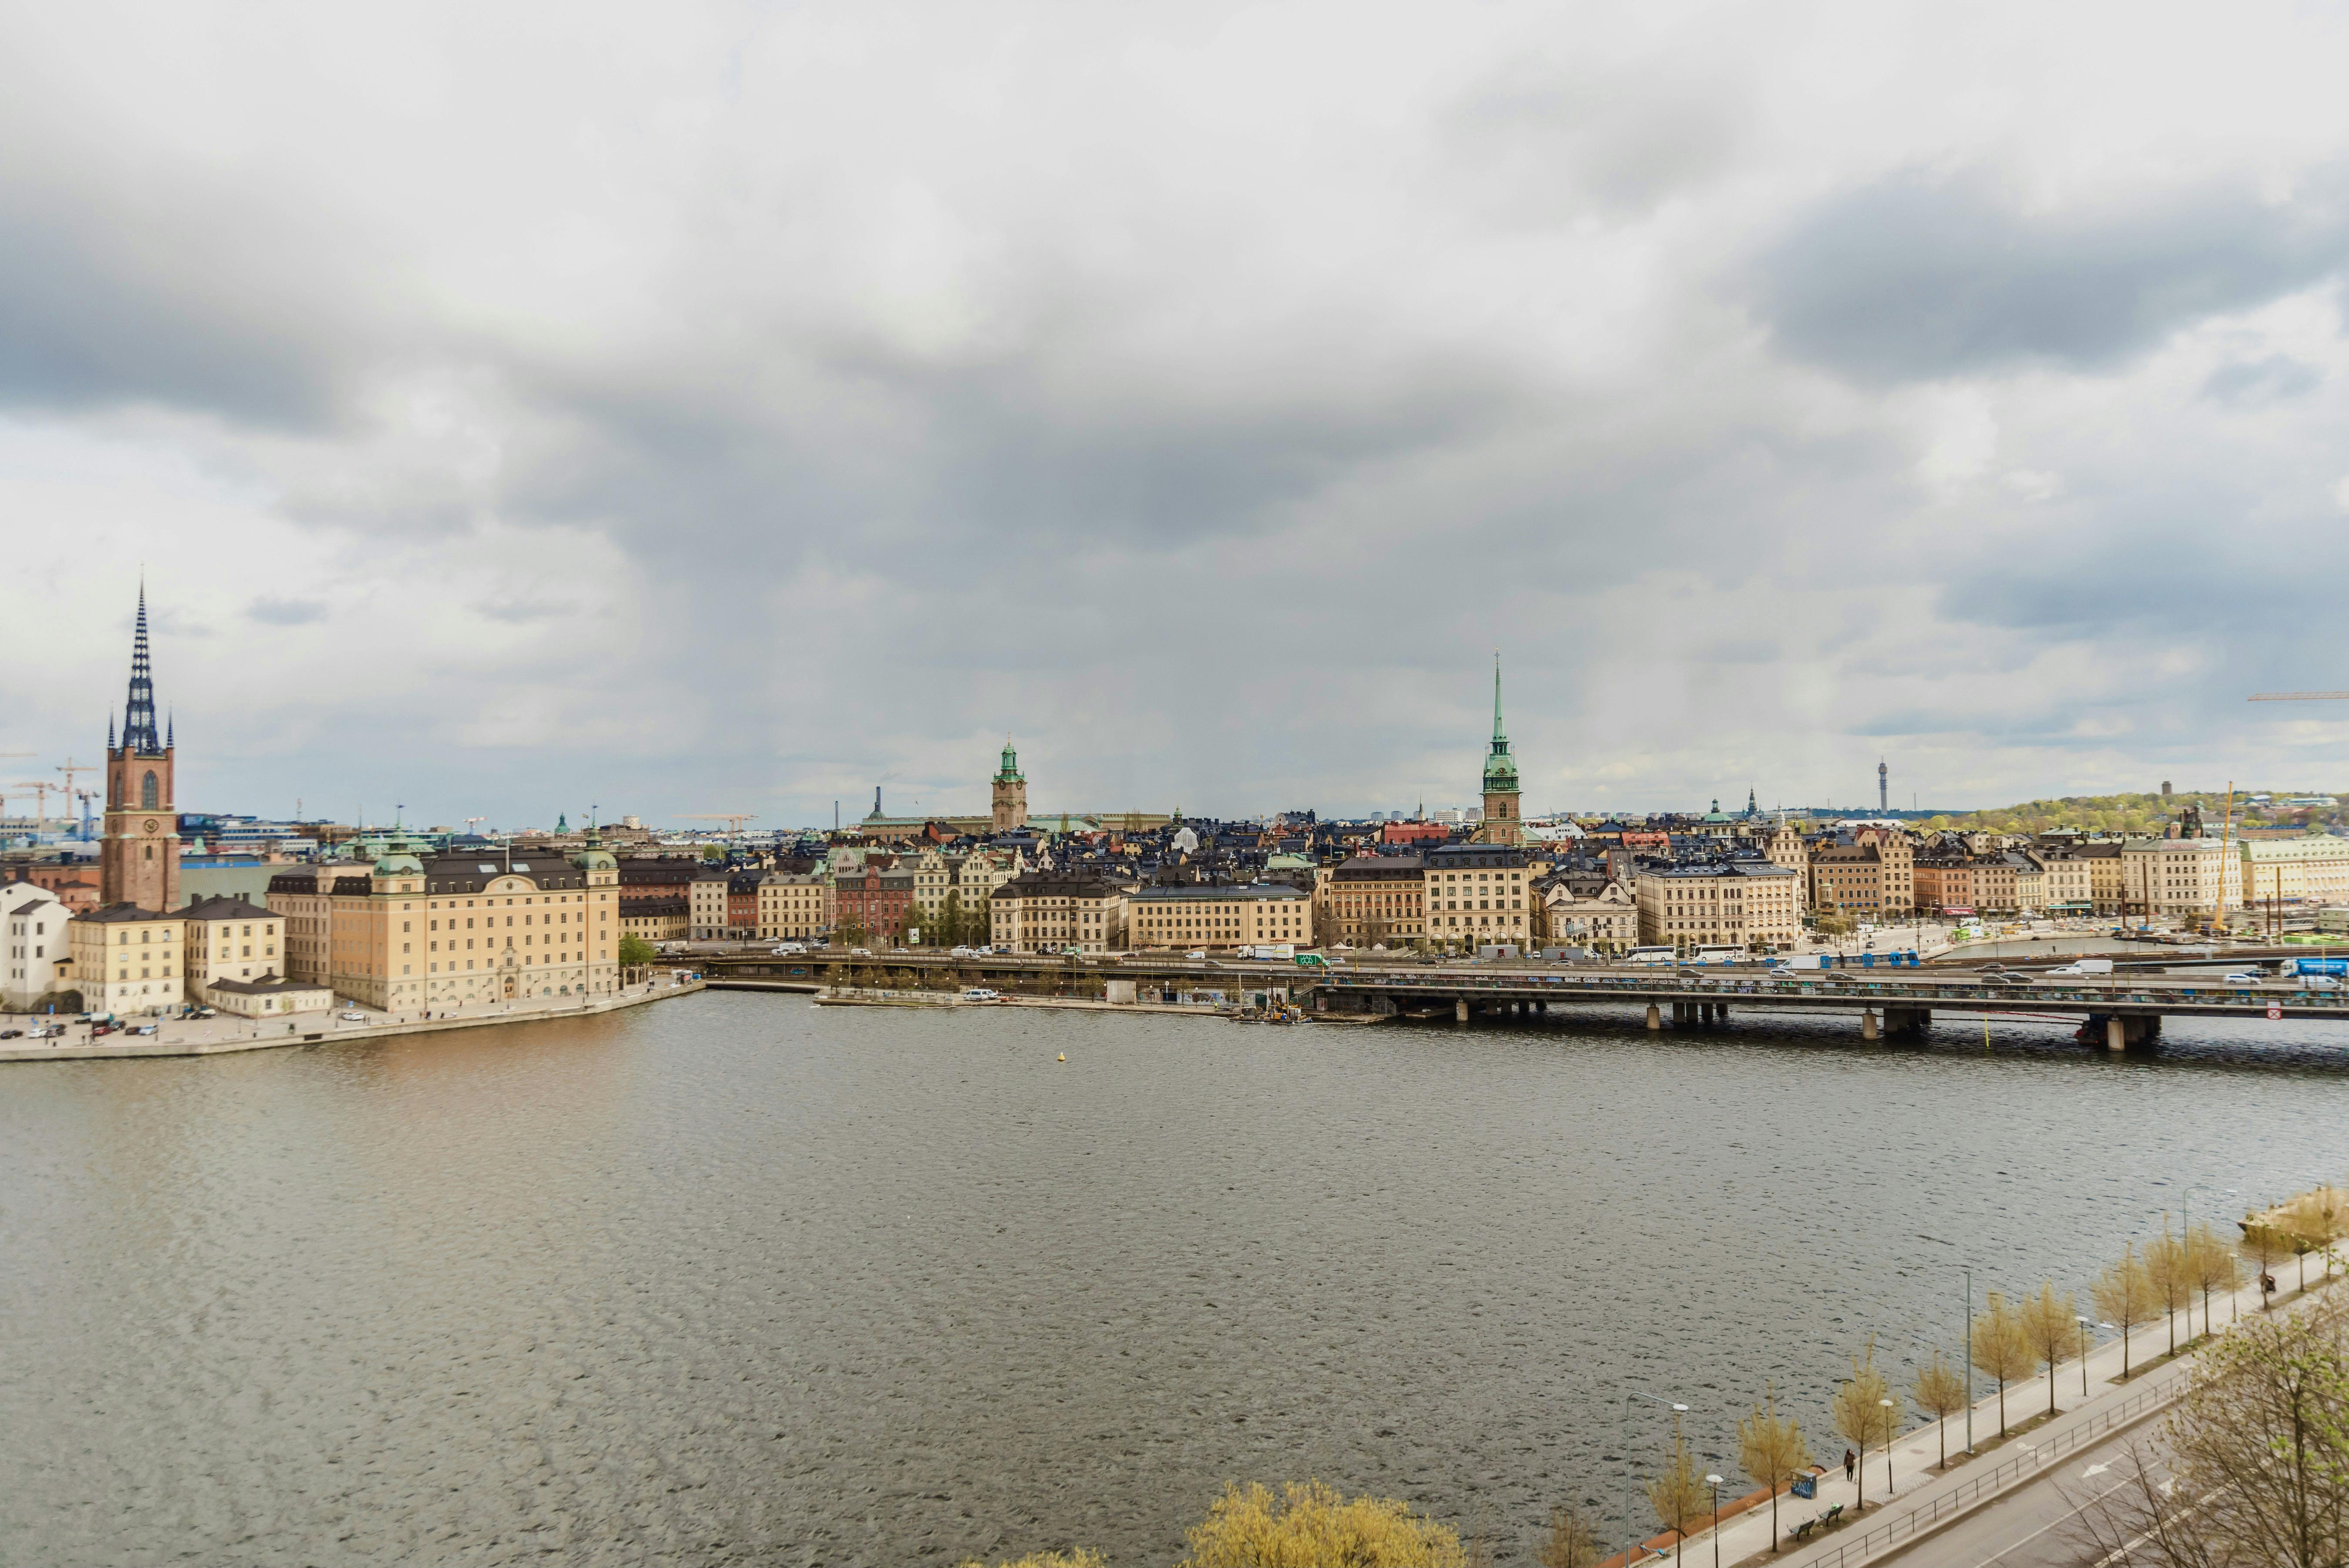 Rozpocznij swoją podróż do Sztokholmu lokalną - prywatną i spersonalizowaną wycieczką